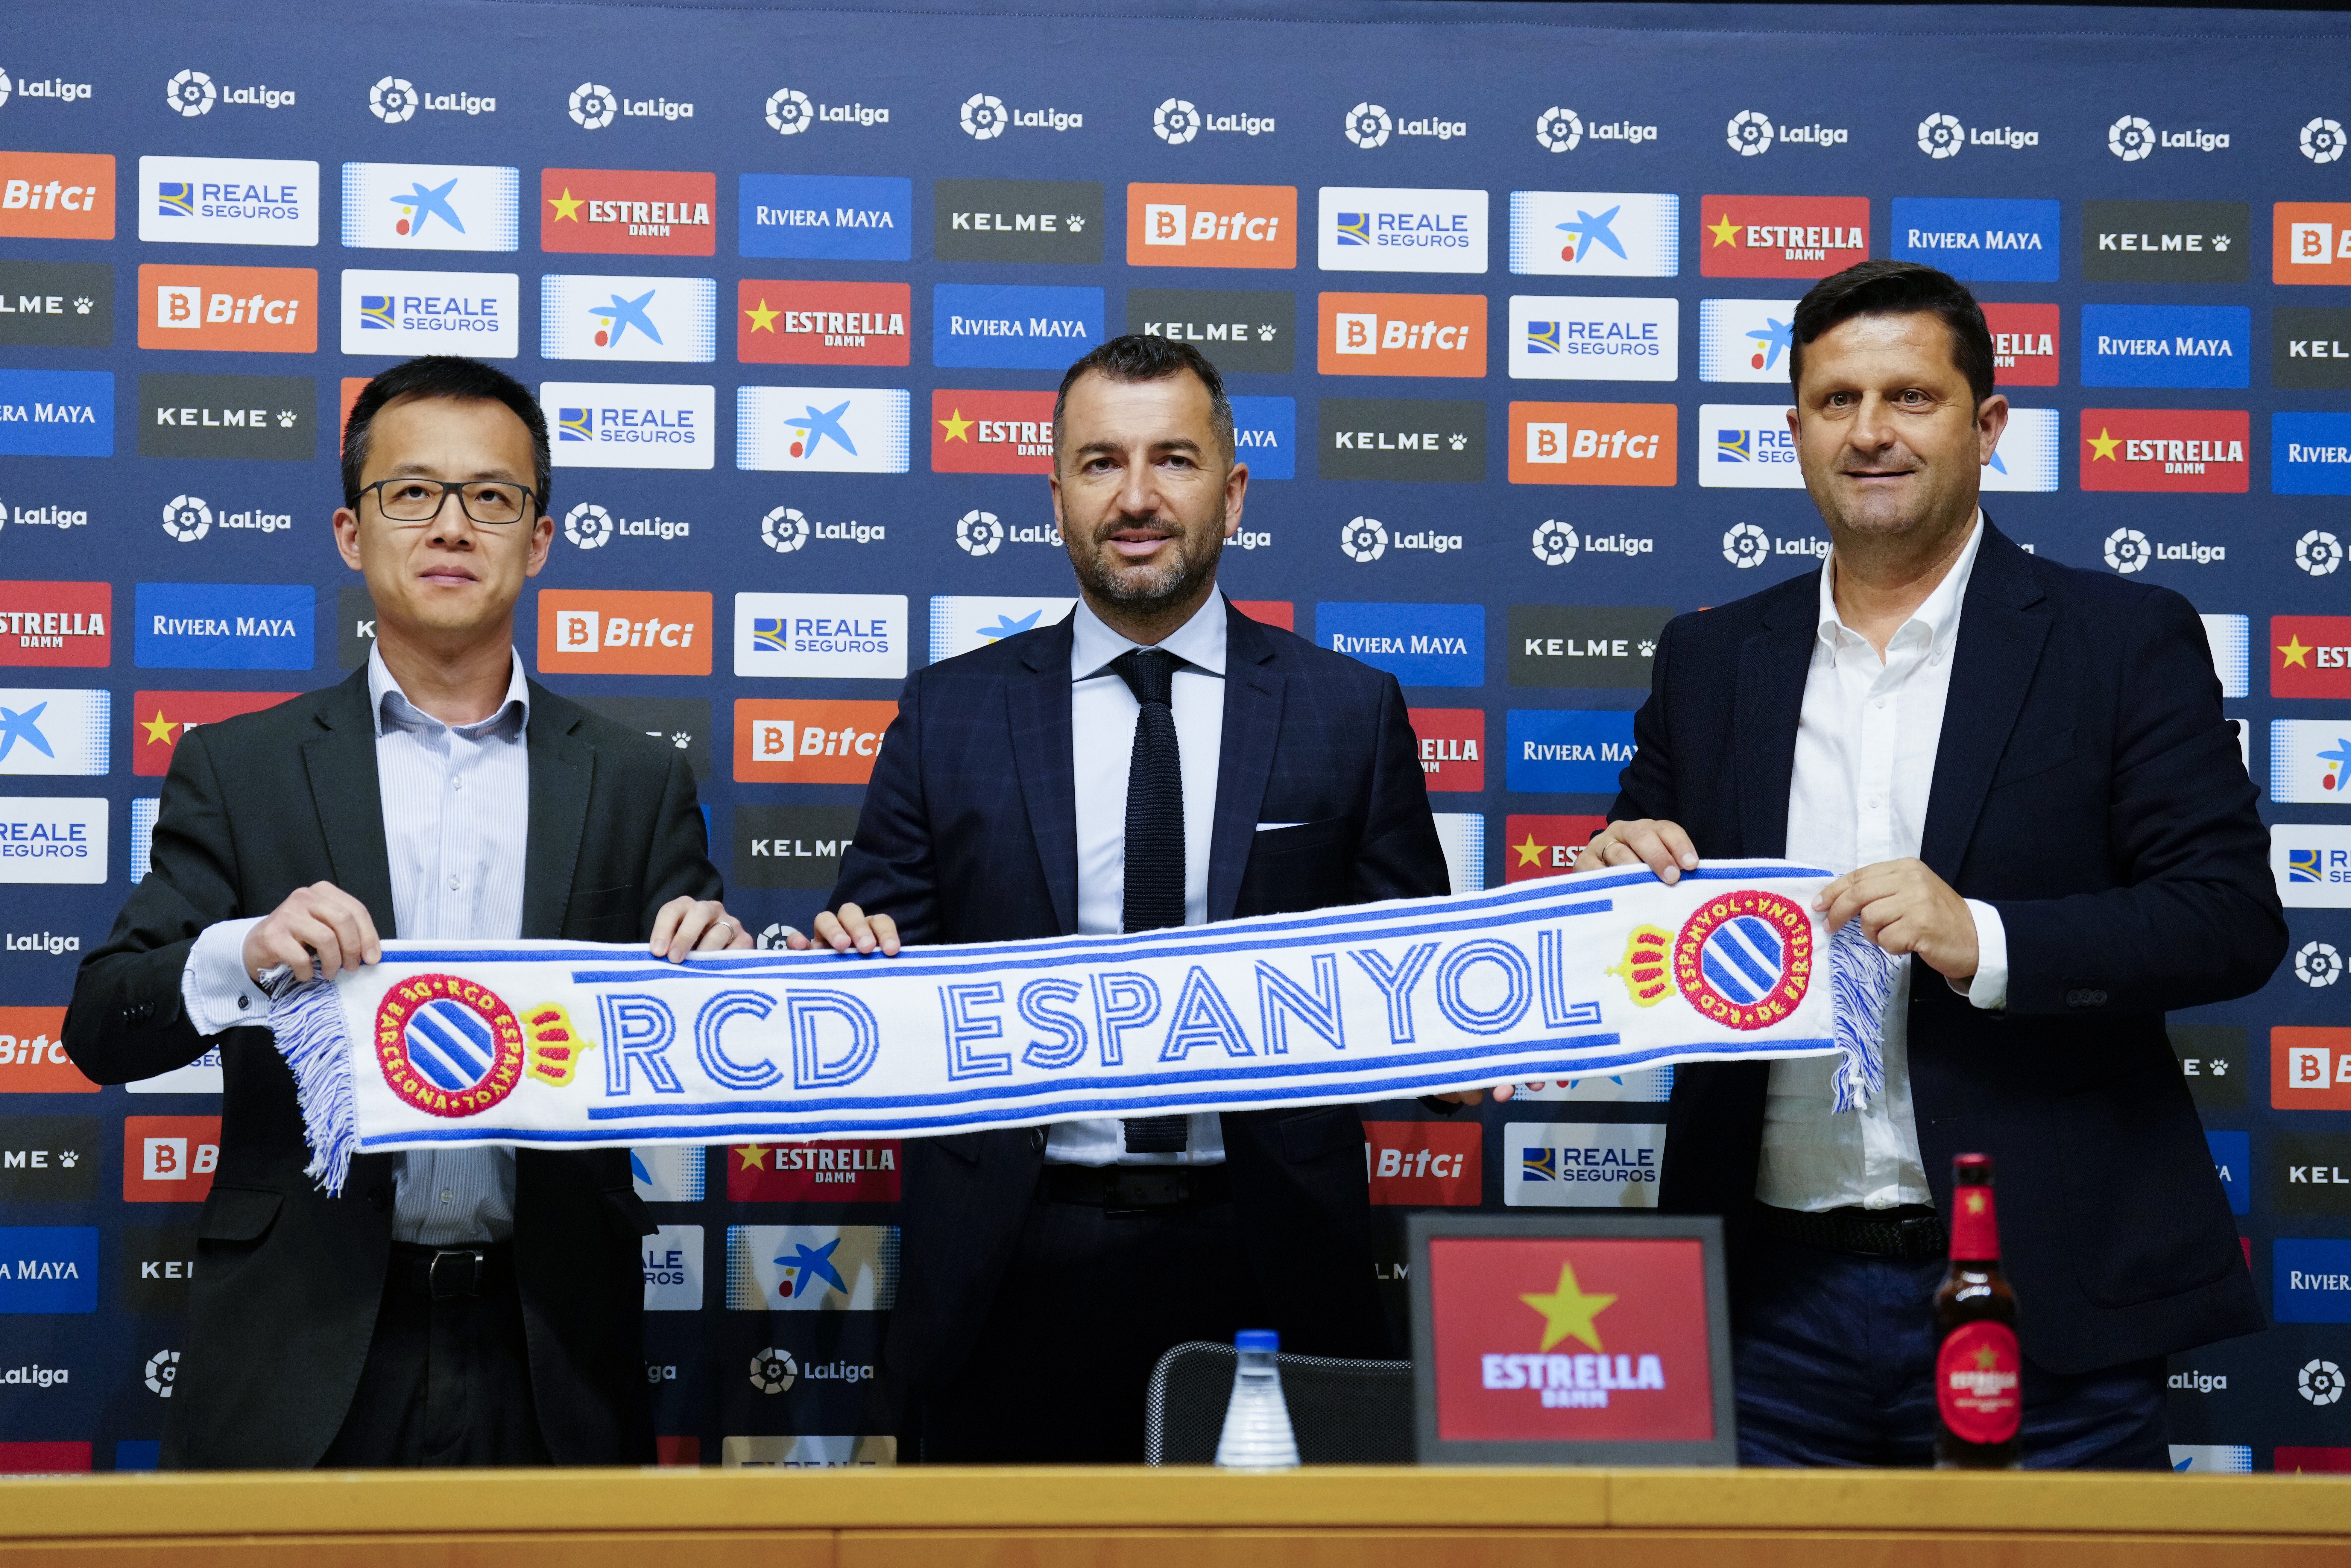 El Espanyol presenta a Diego Martínez, el nuevo entrenador: "El objetivo es el presente"